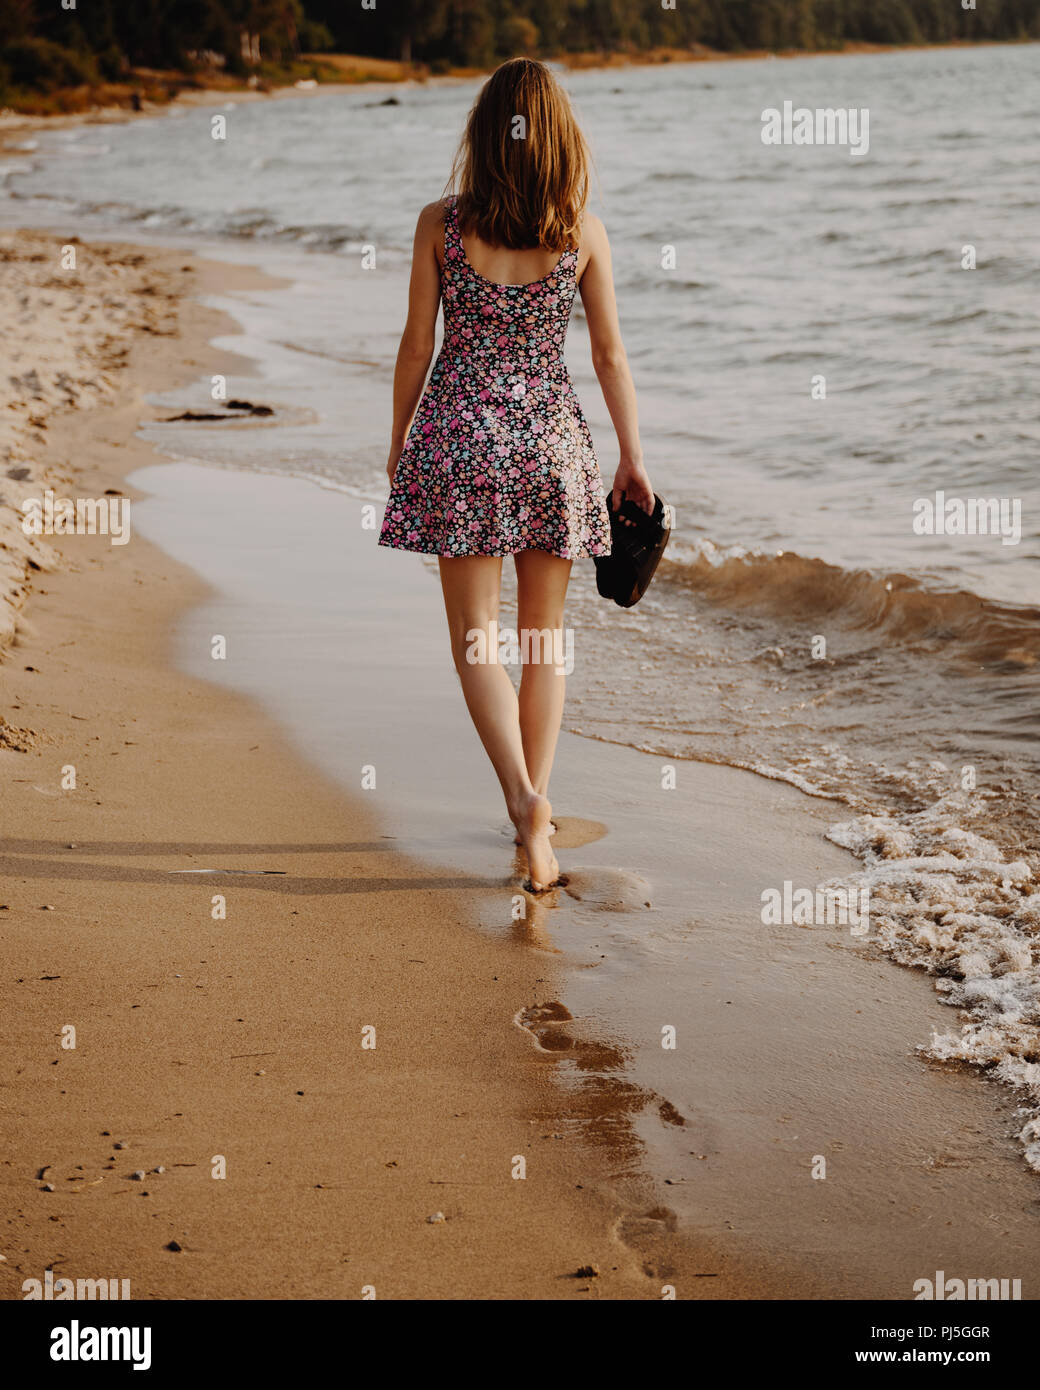 Adolescente Paseando por la playa al atardecer, sosteniendo sus sandalias Foto de stock